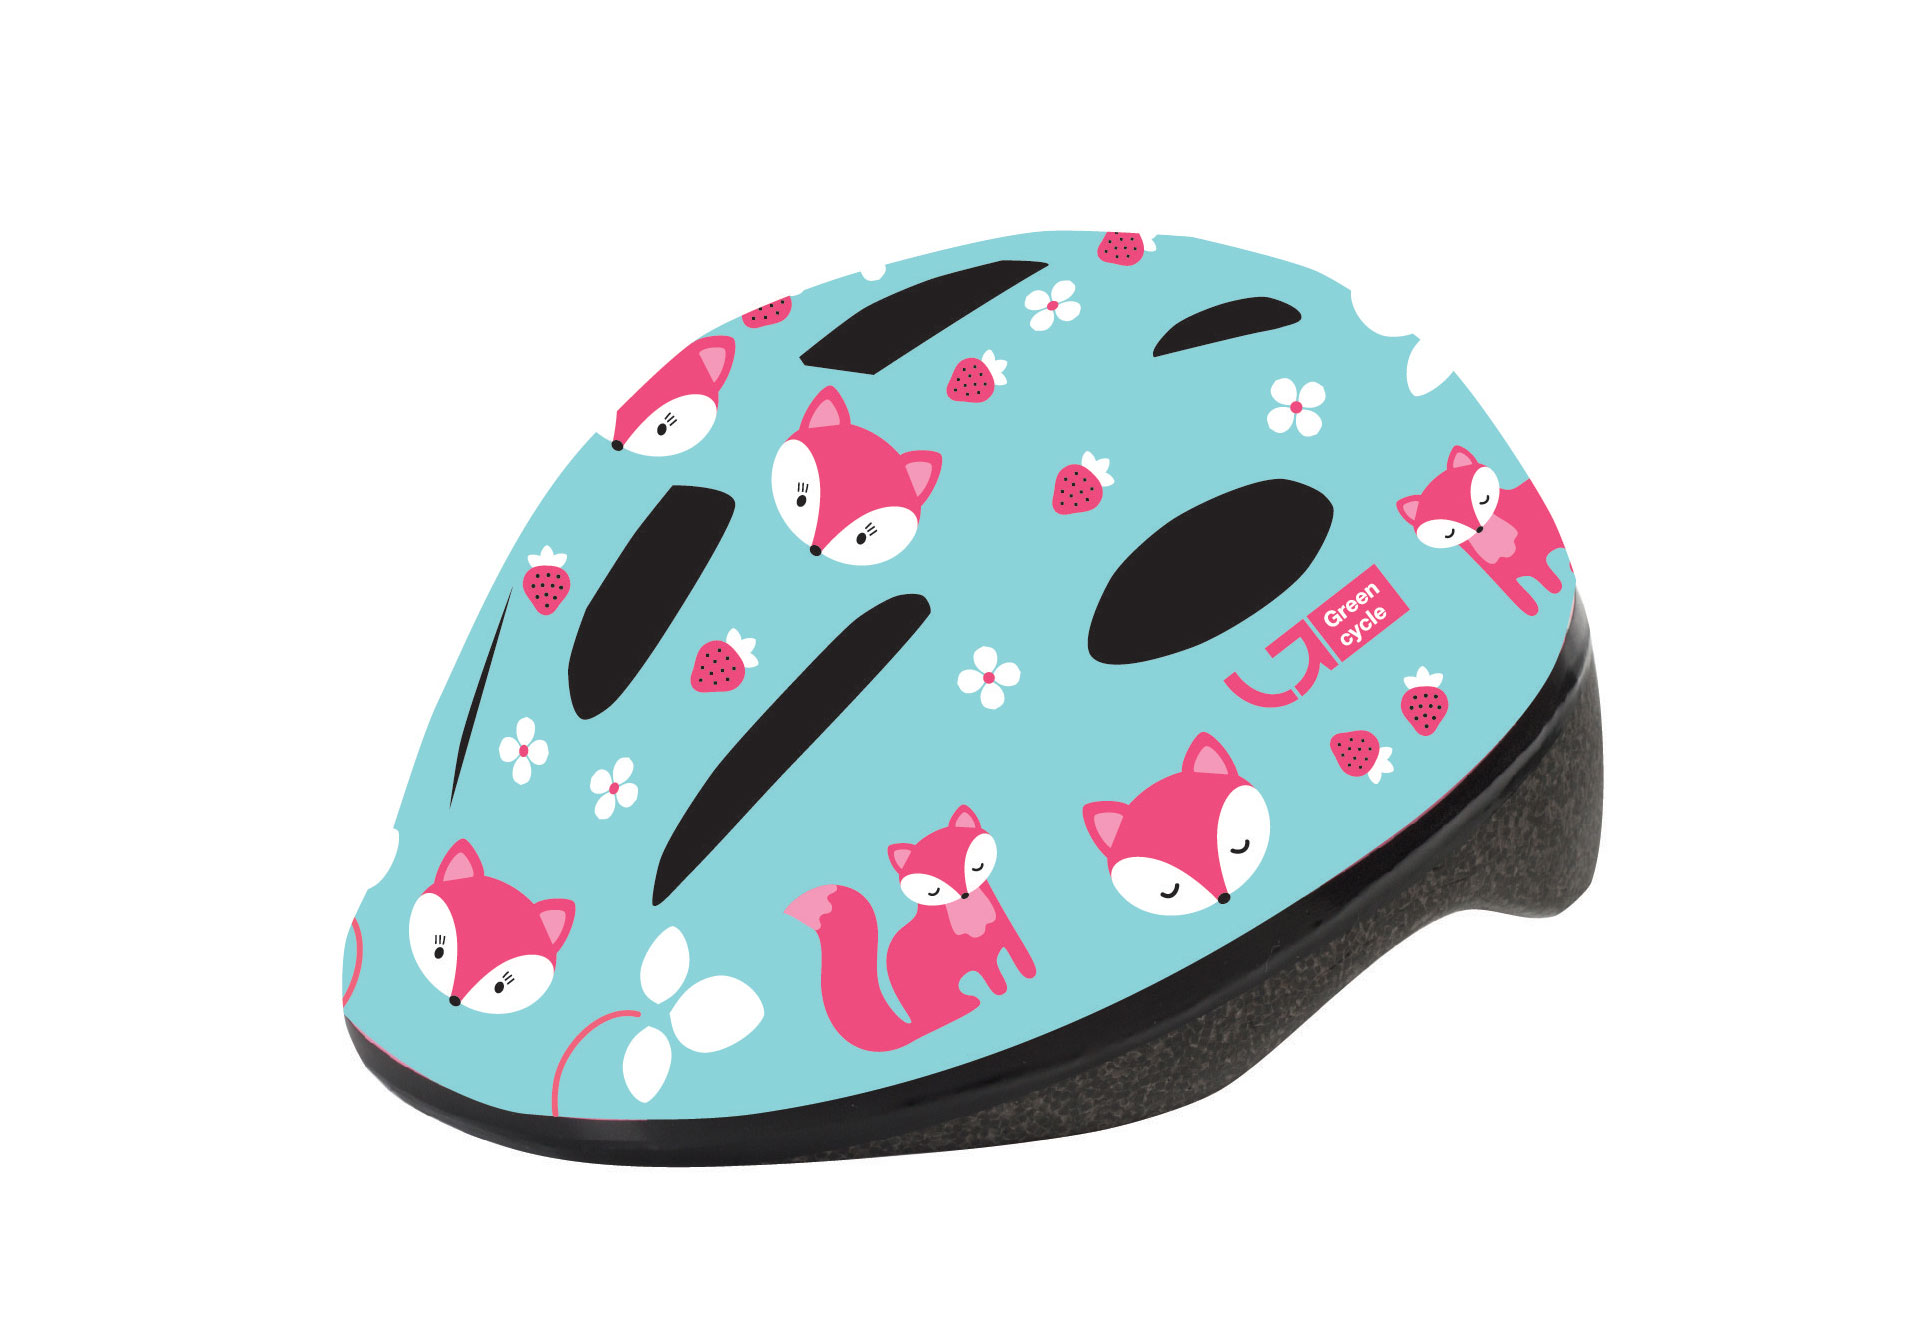 Шлем детский Green Cycle Foxy размер 48-52см мятный/малиновый/розовый лак